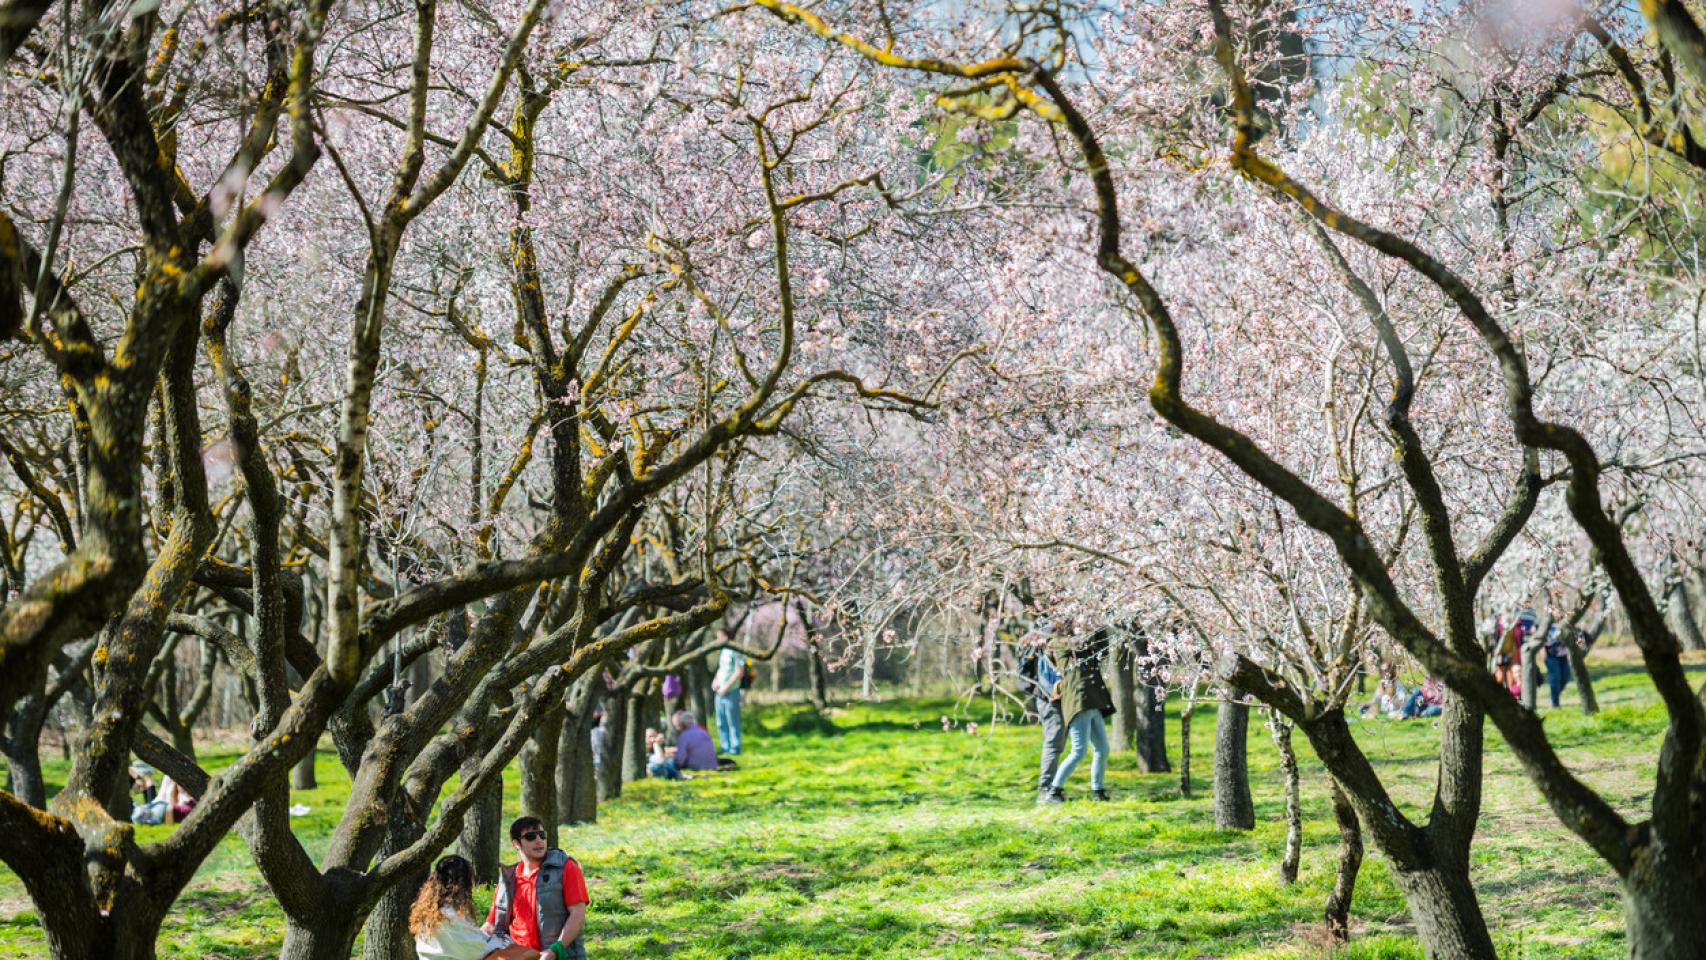 Valle del Jerte y otros lugares donde ver cerezos en flor en 2023